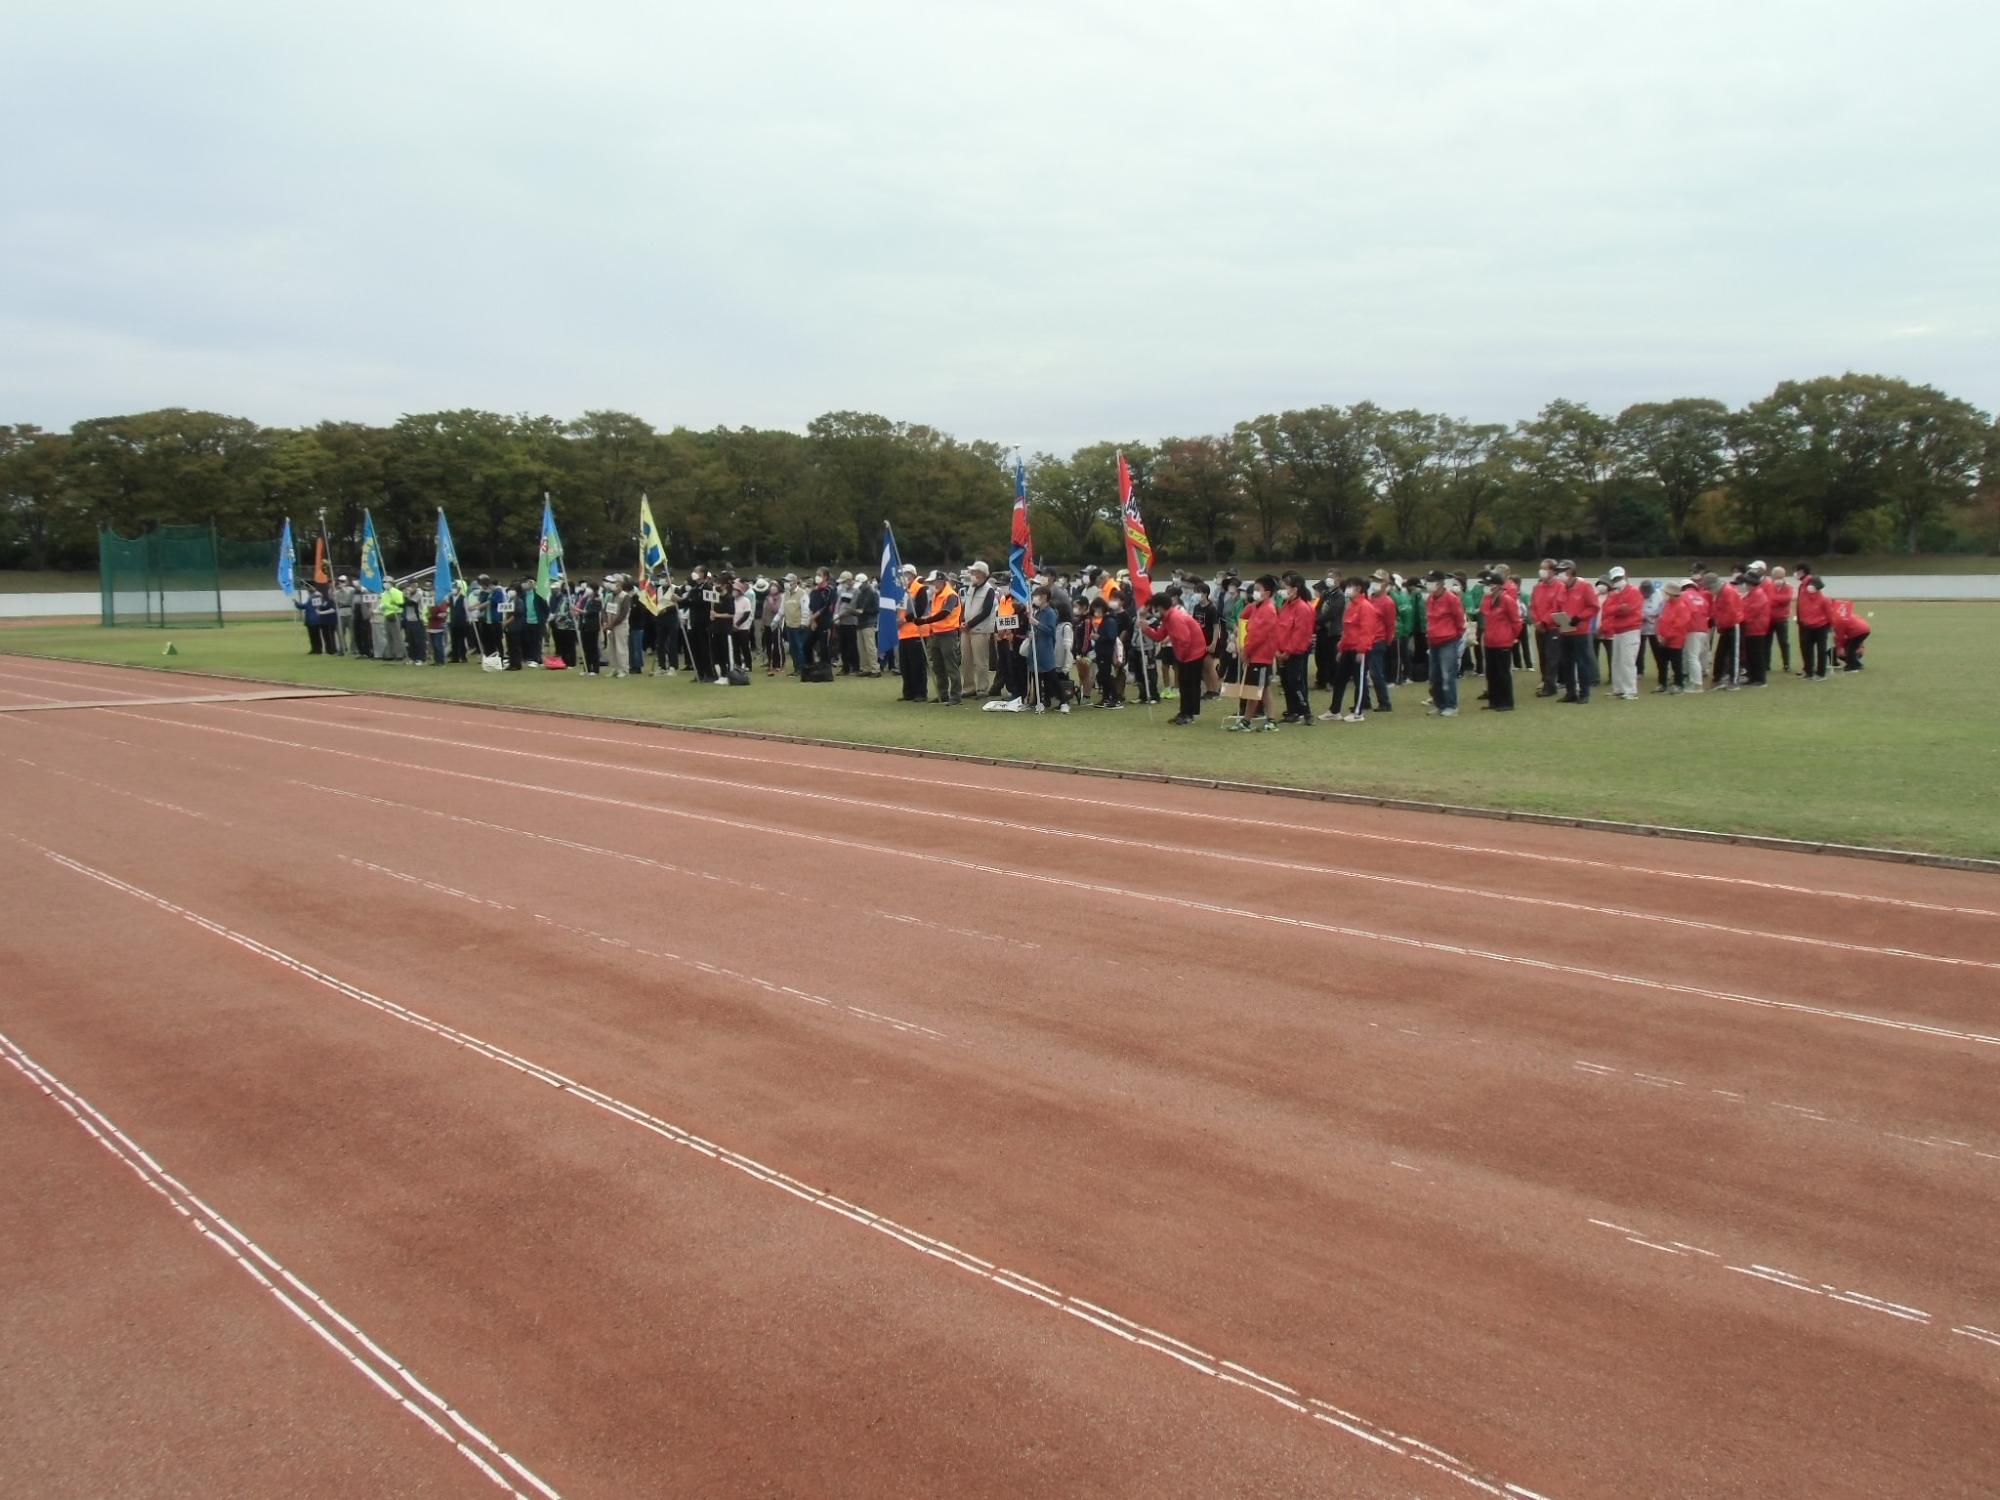 陸上競技場で開会式を行っている写真